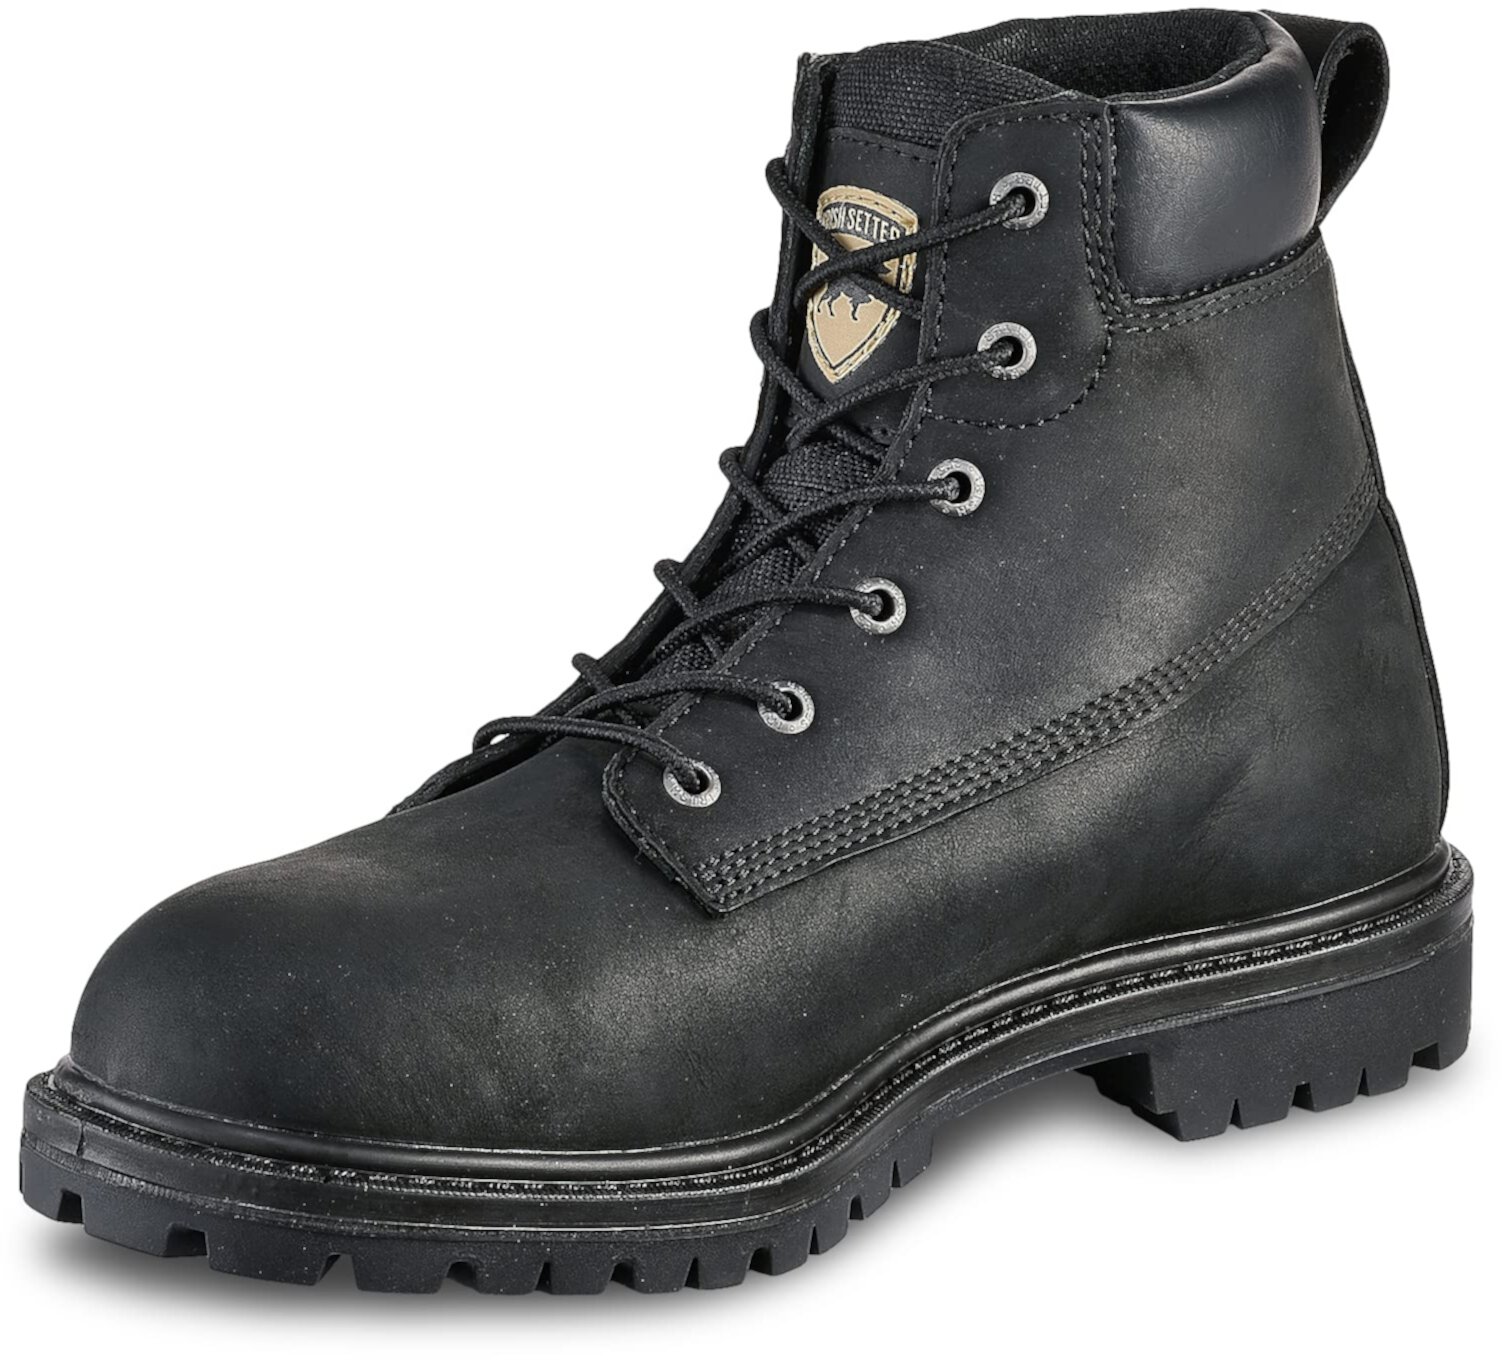 Заказать Рабочие ботинки 6-дюймовый водонепроницаемый алюминиевый носокHopkins Irish Setter, цвет - черный, по цене 23 240 рублей на маркетплейсеUsmall.ru